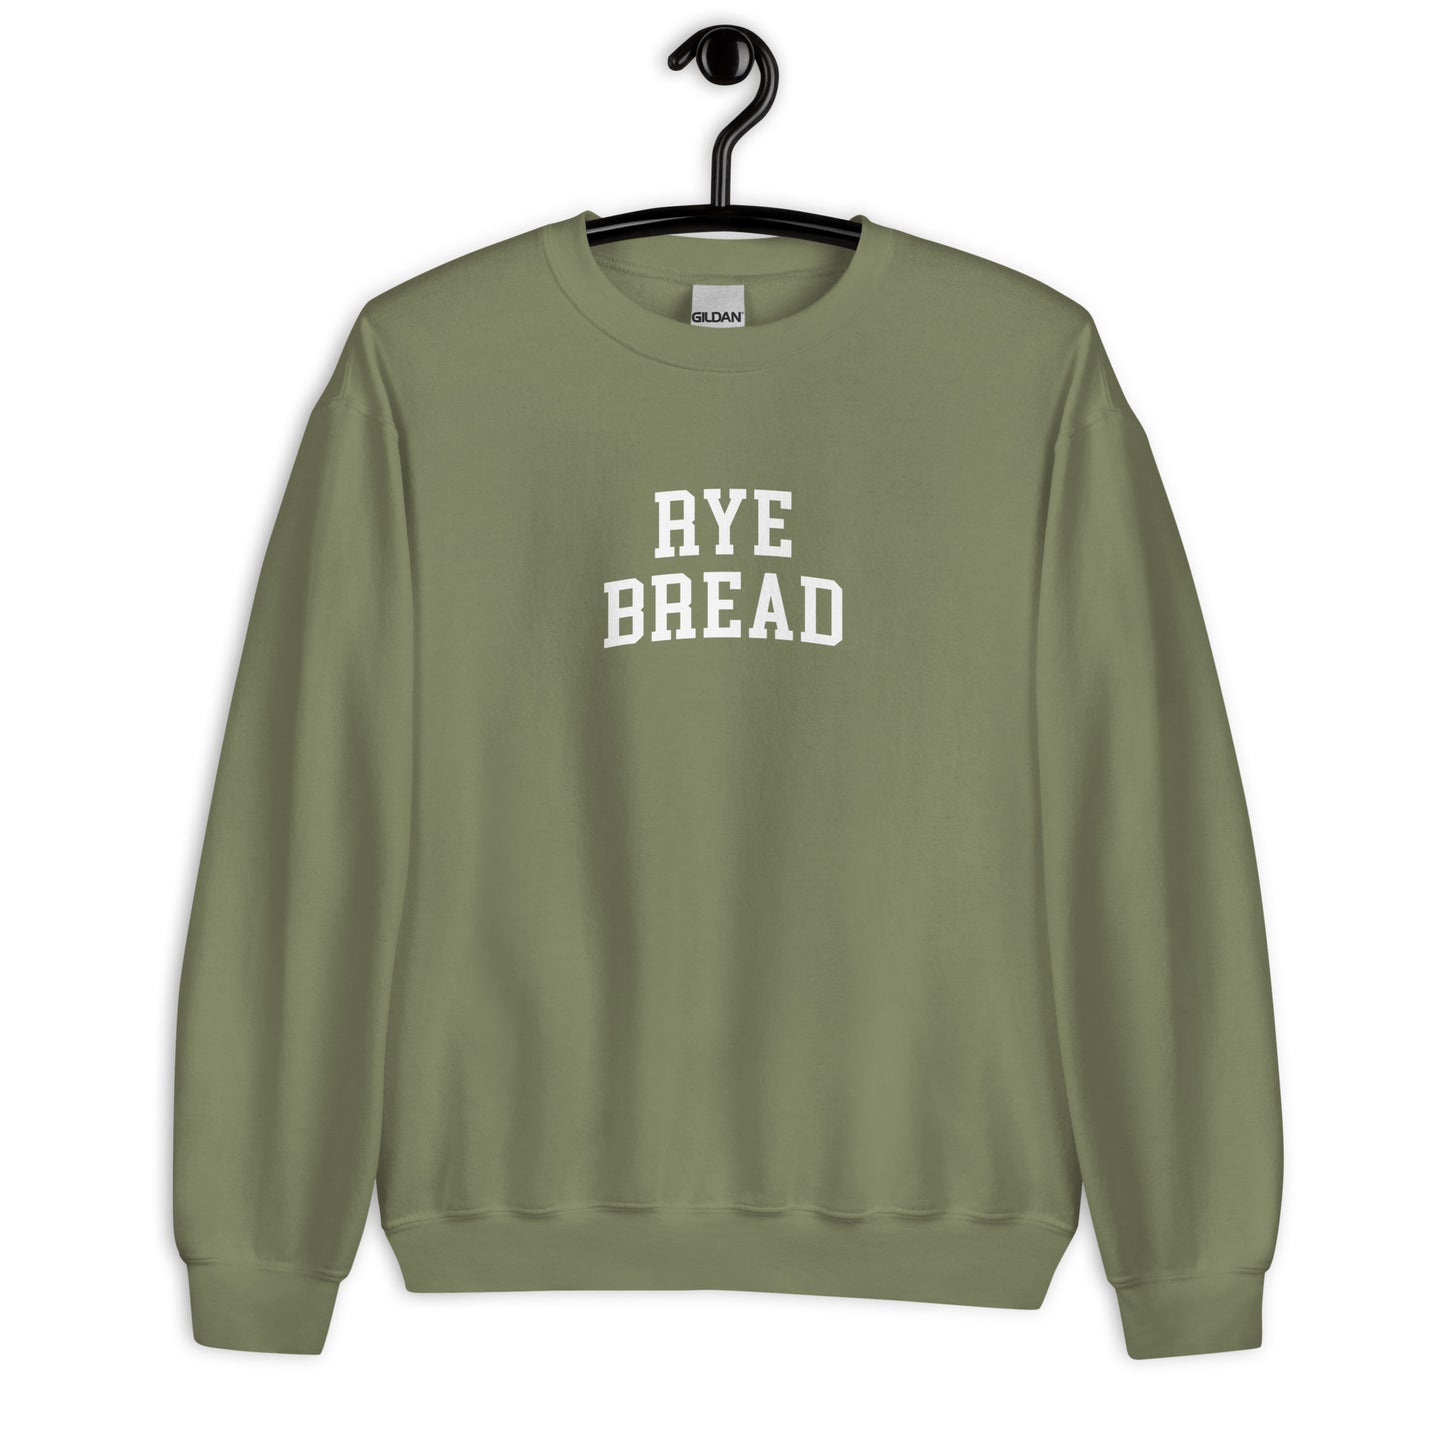 Rye Bread Sweatshirt - Arched Font